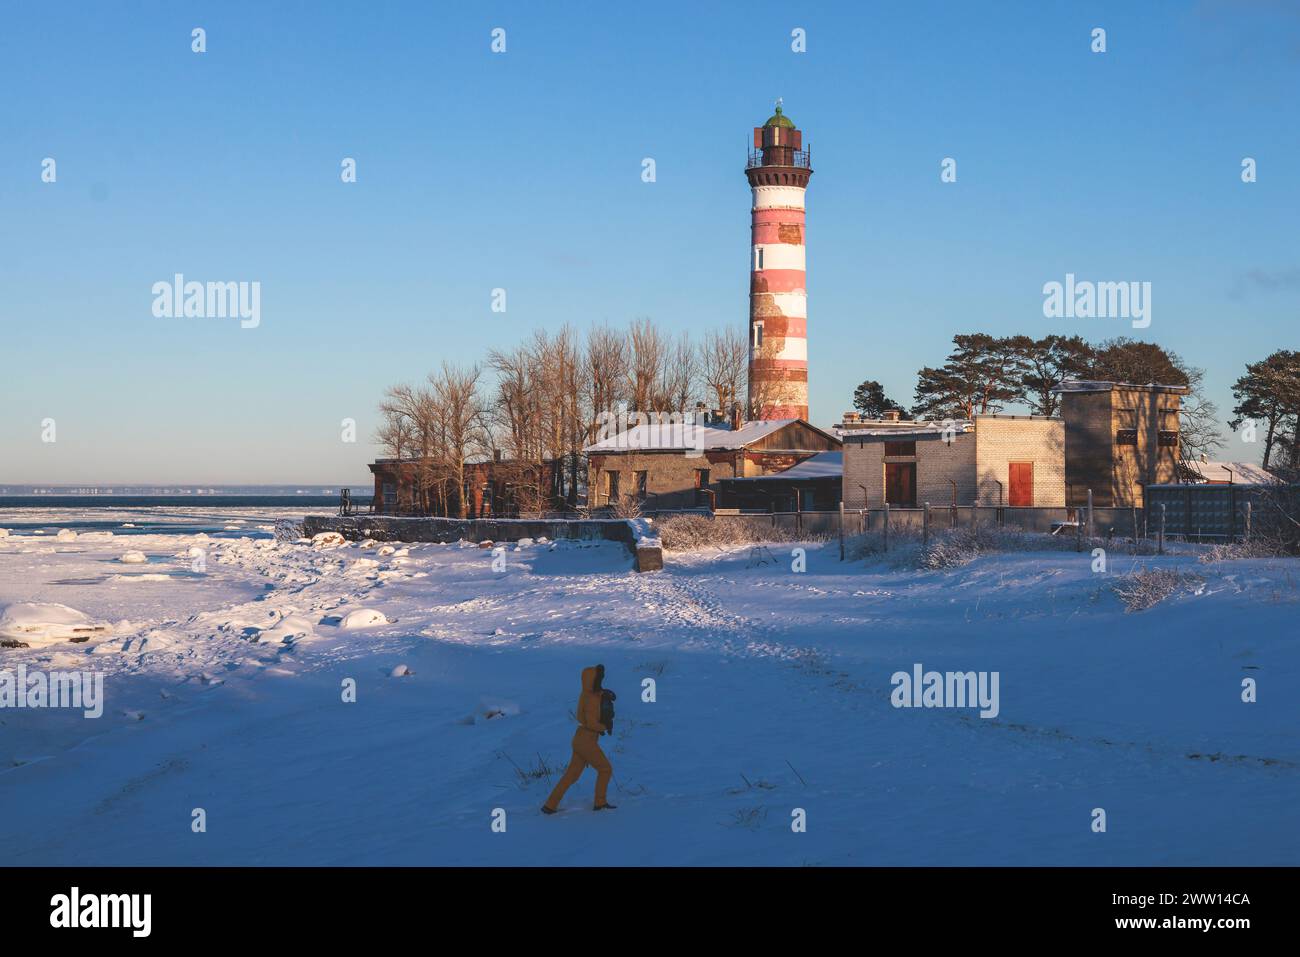 Vista innevata del faro di Shepelevsky, del Golfo di Finlandia, della regione dell'oblast' di Leningrado, della Russia, della giornata di sole invernale con cielo blu, fari e fari di Rus' Foto Stock